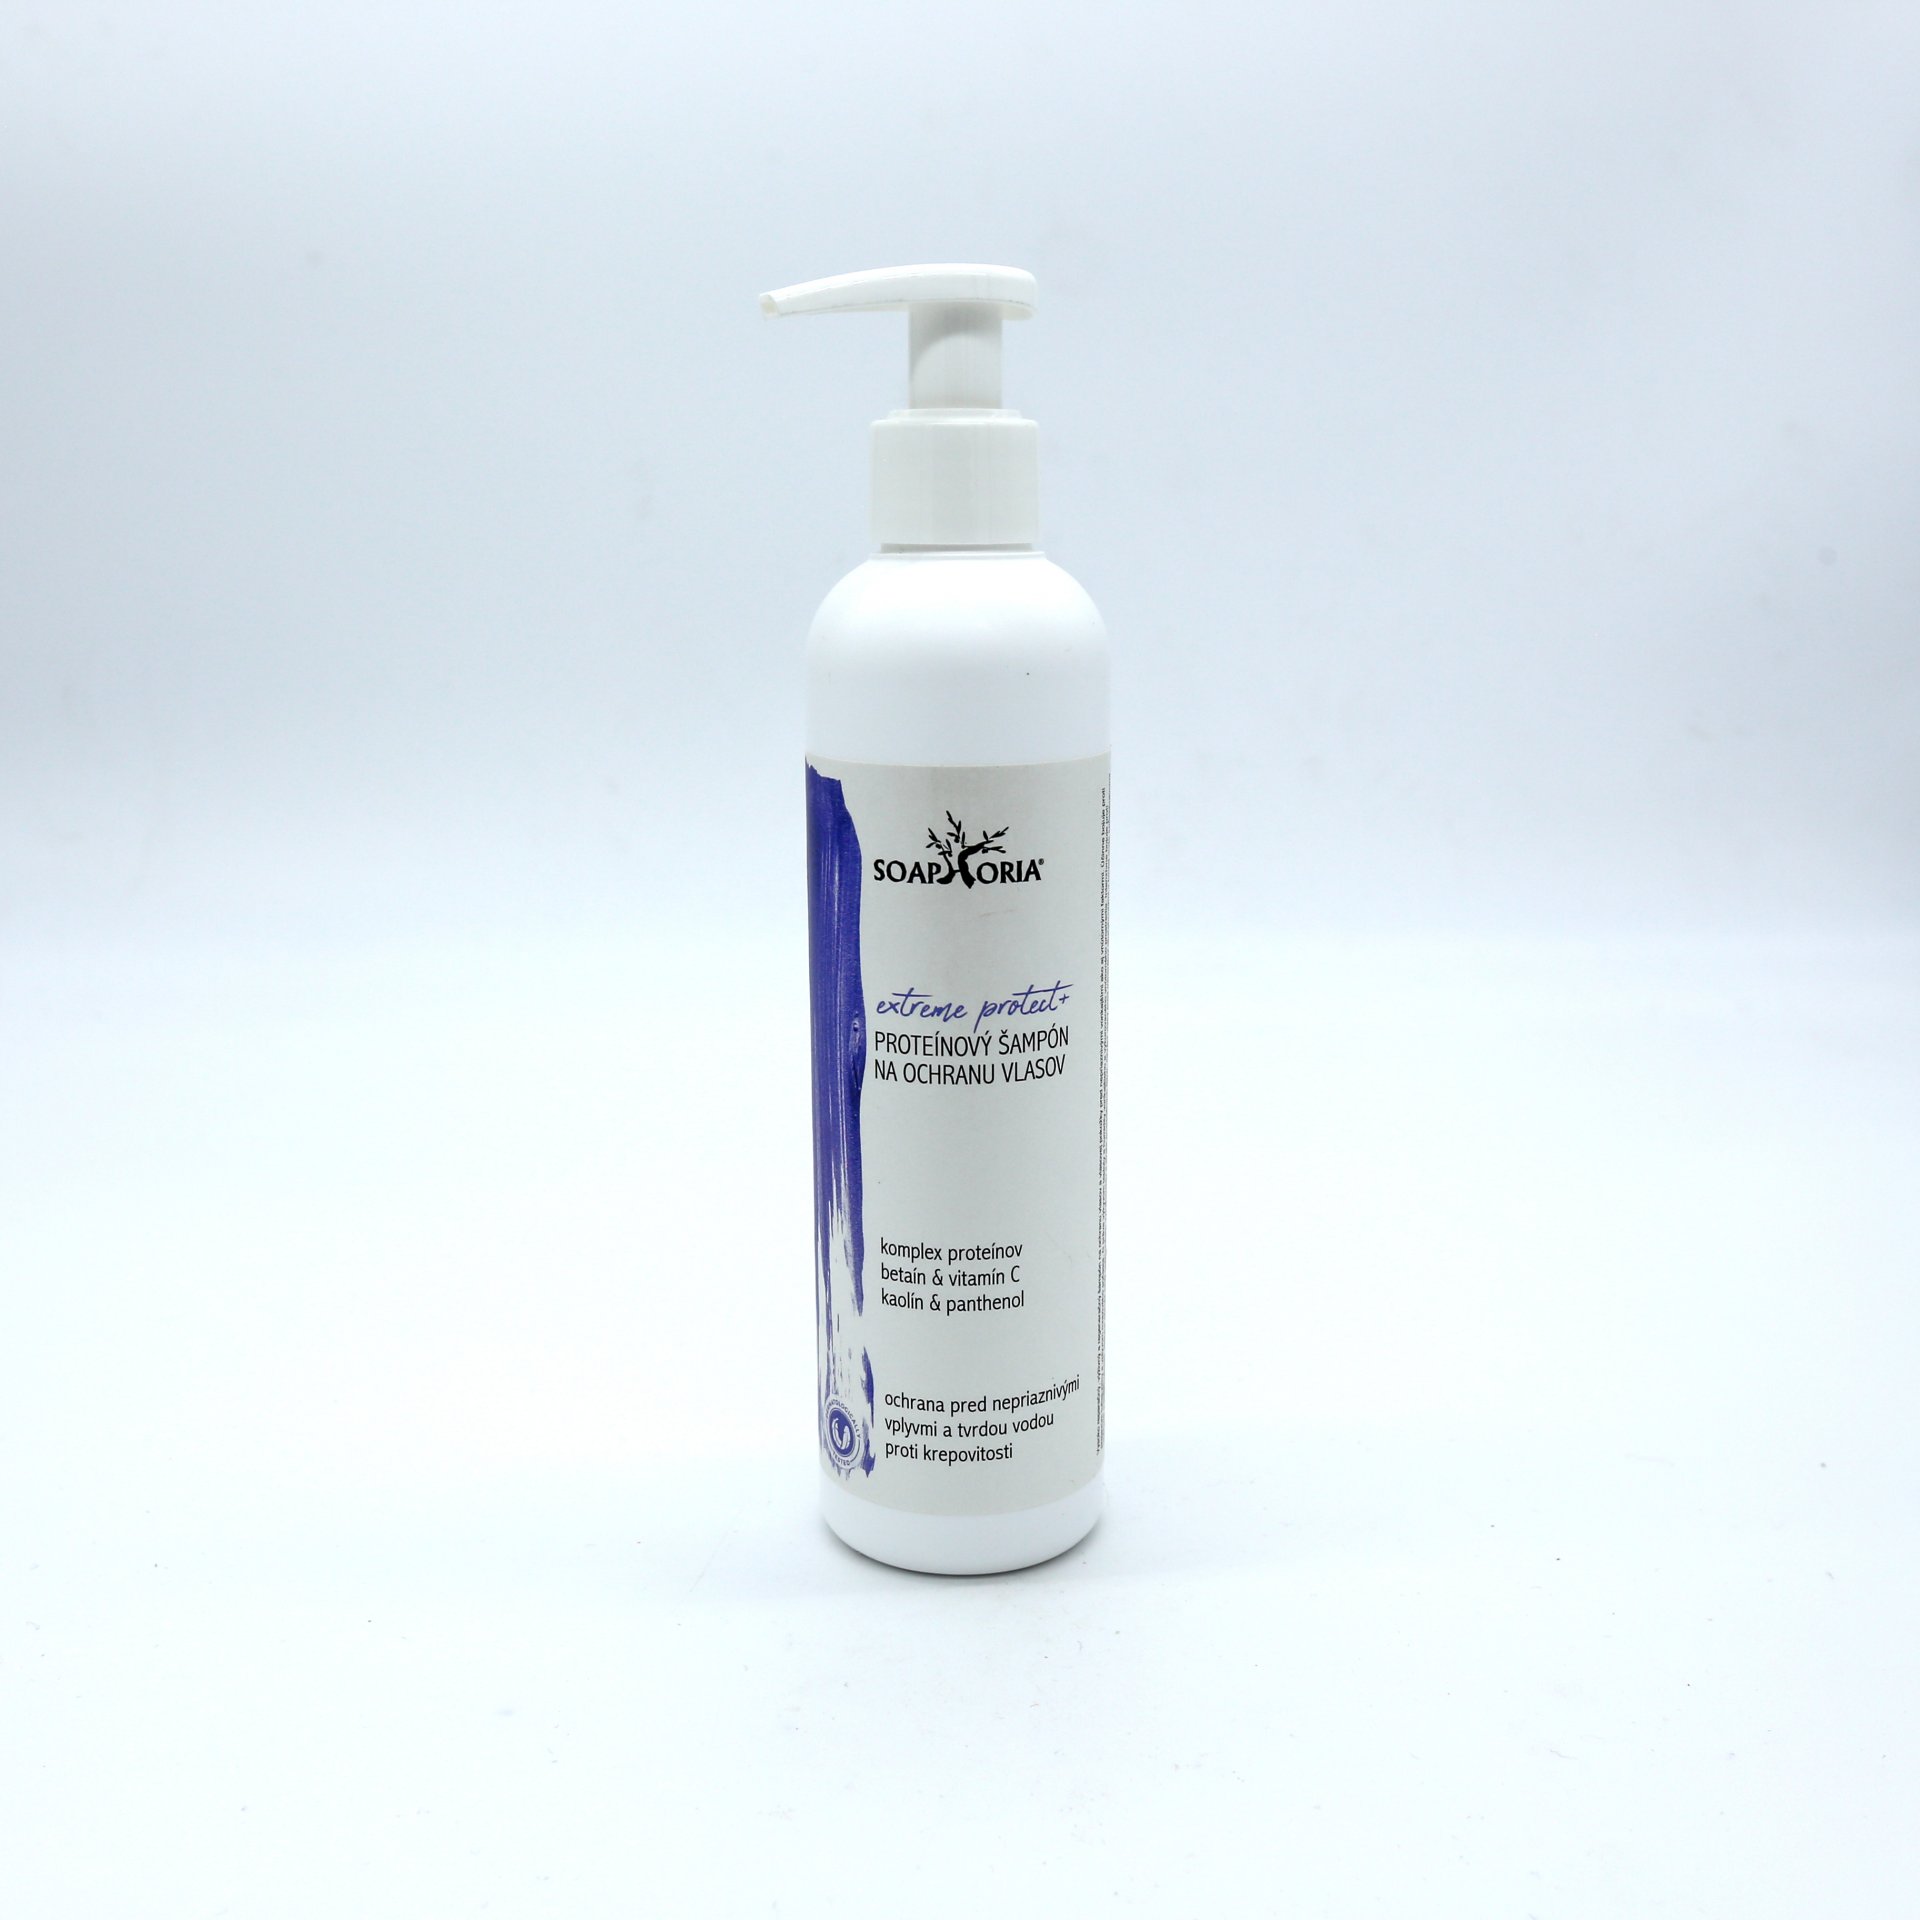 Extremeprotect+ proteínový šampón 250ml